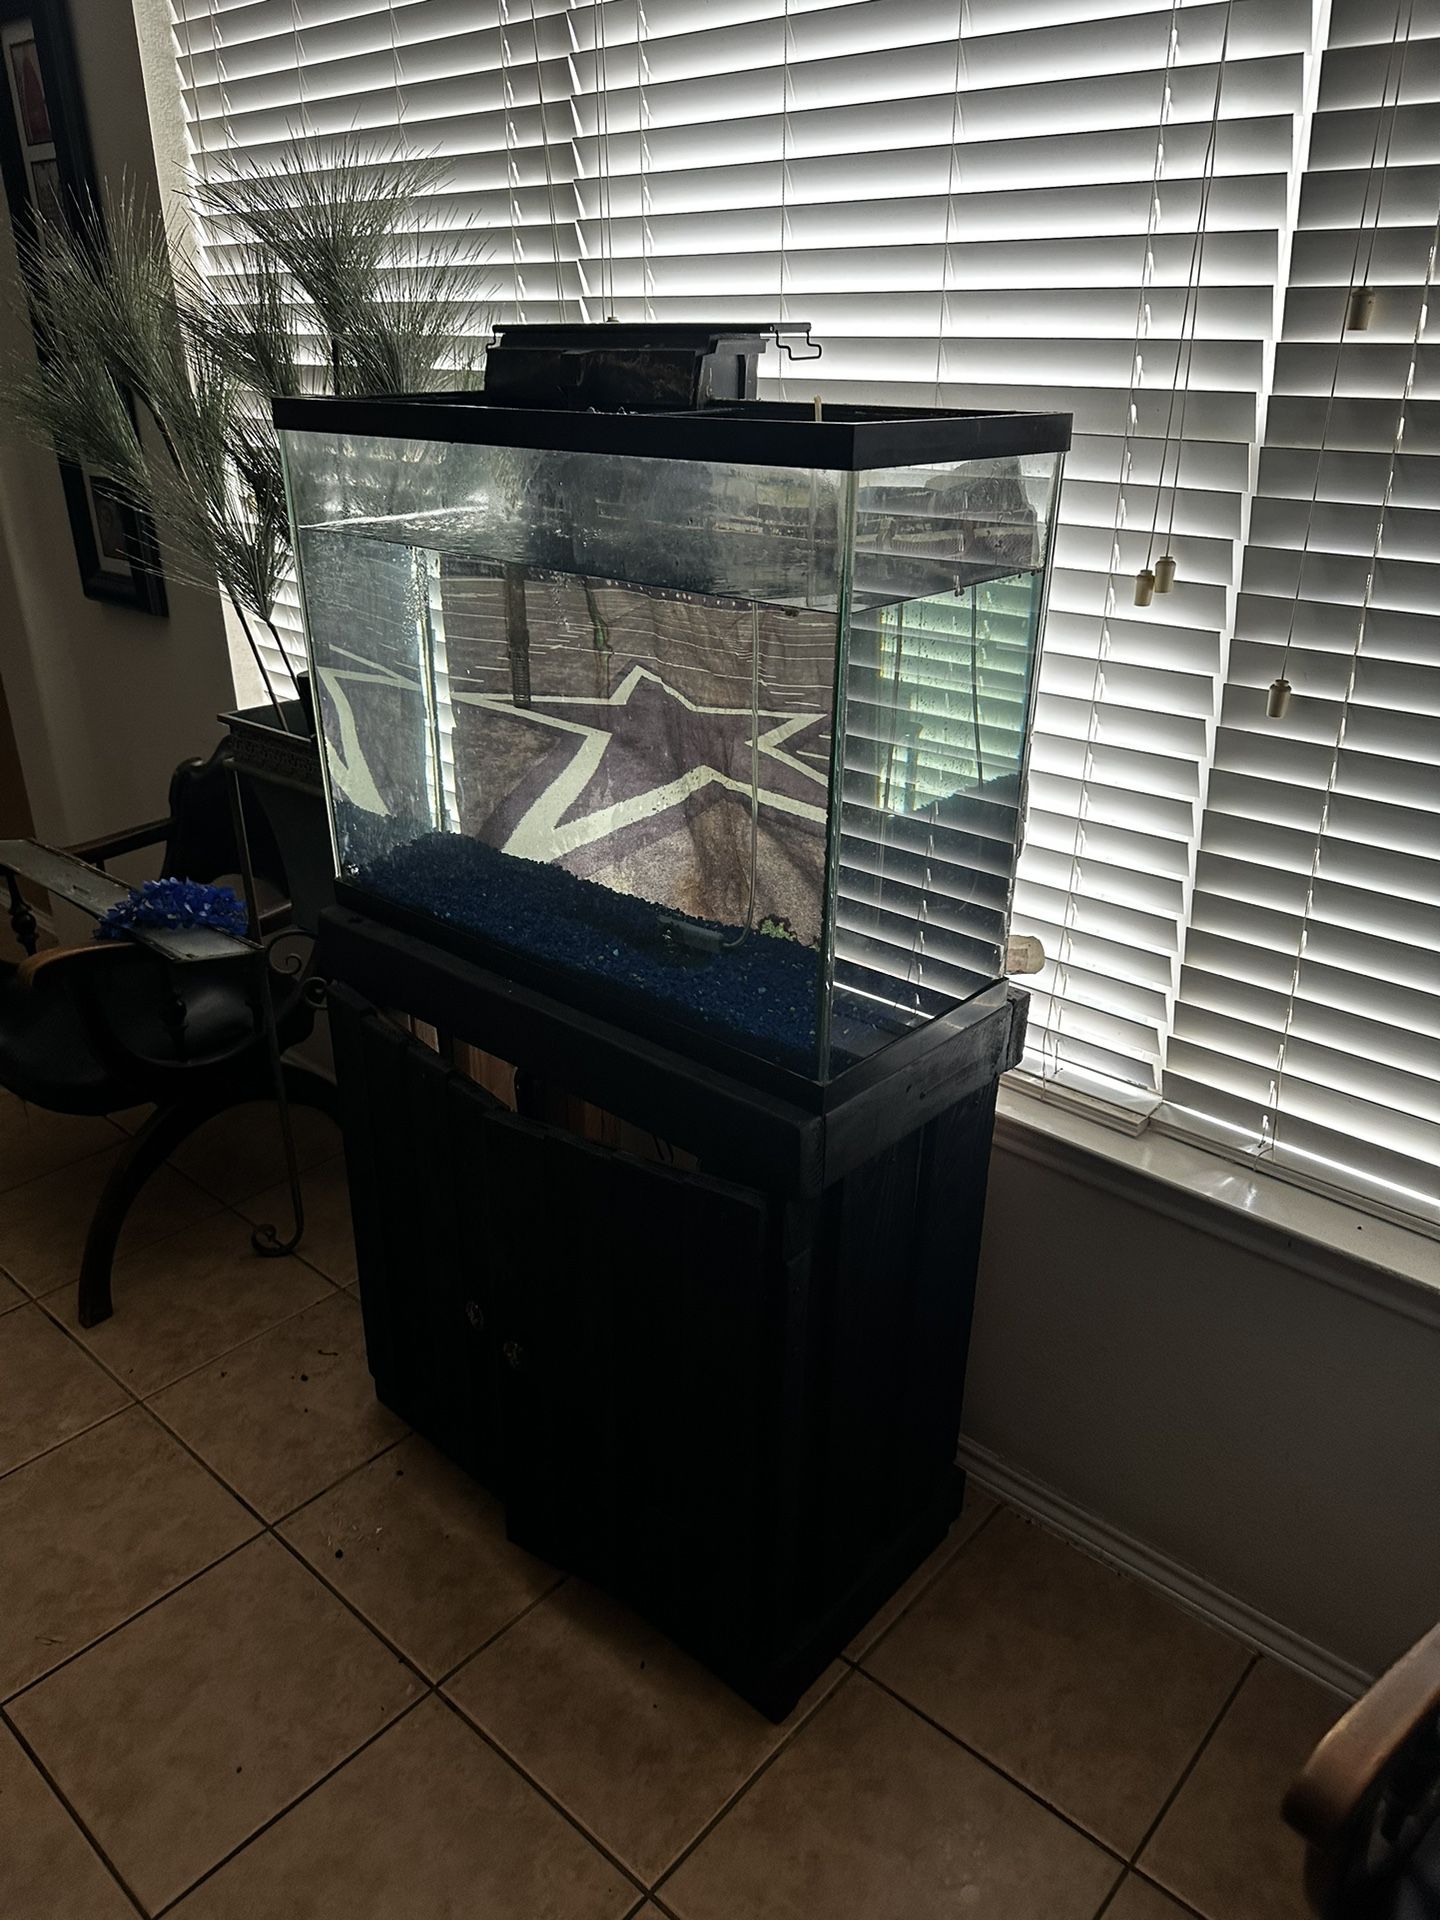 45 Gallon Aquarium / Home Made Stand&canopy